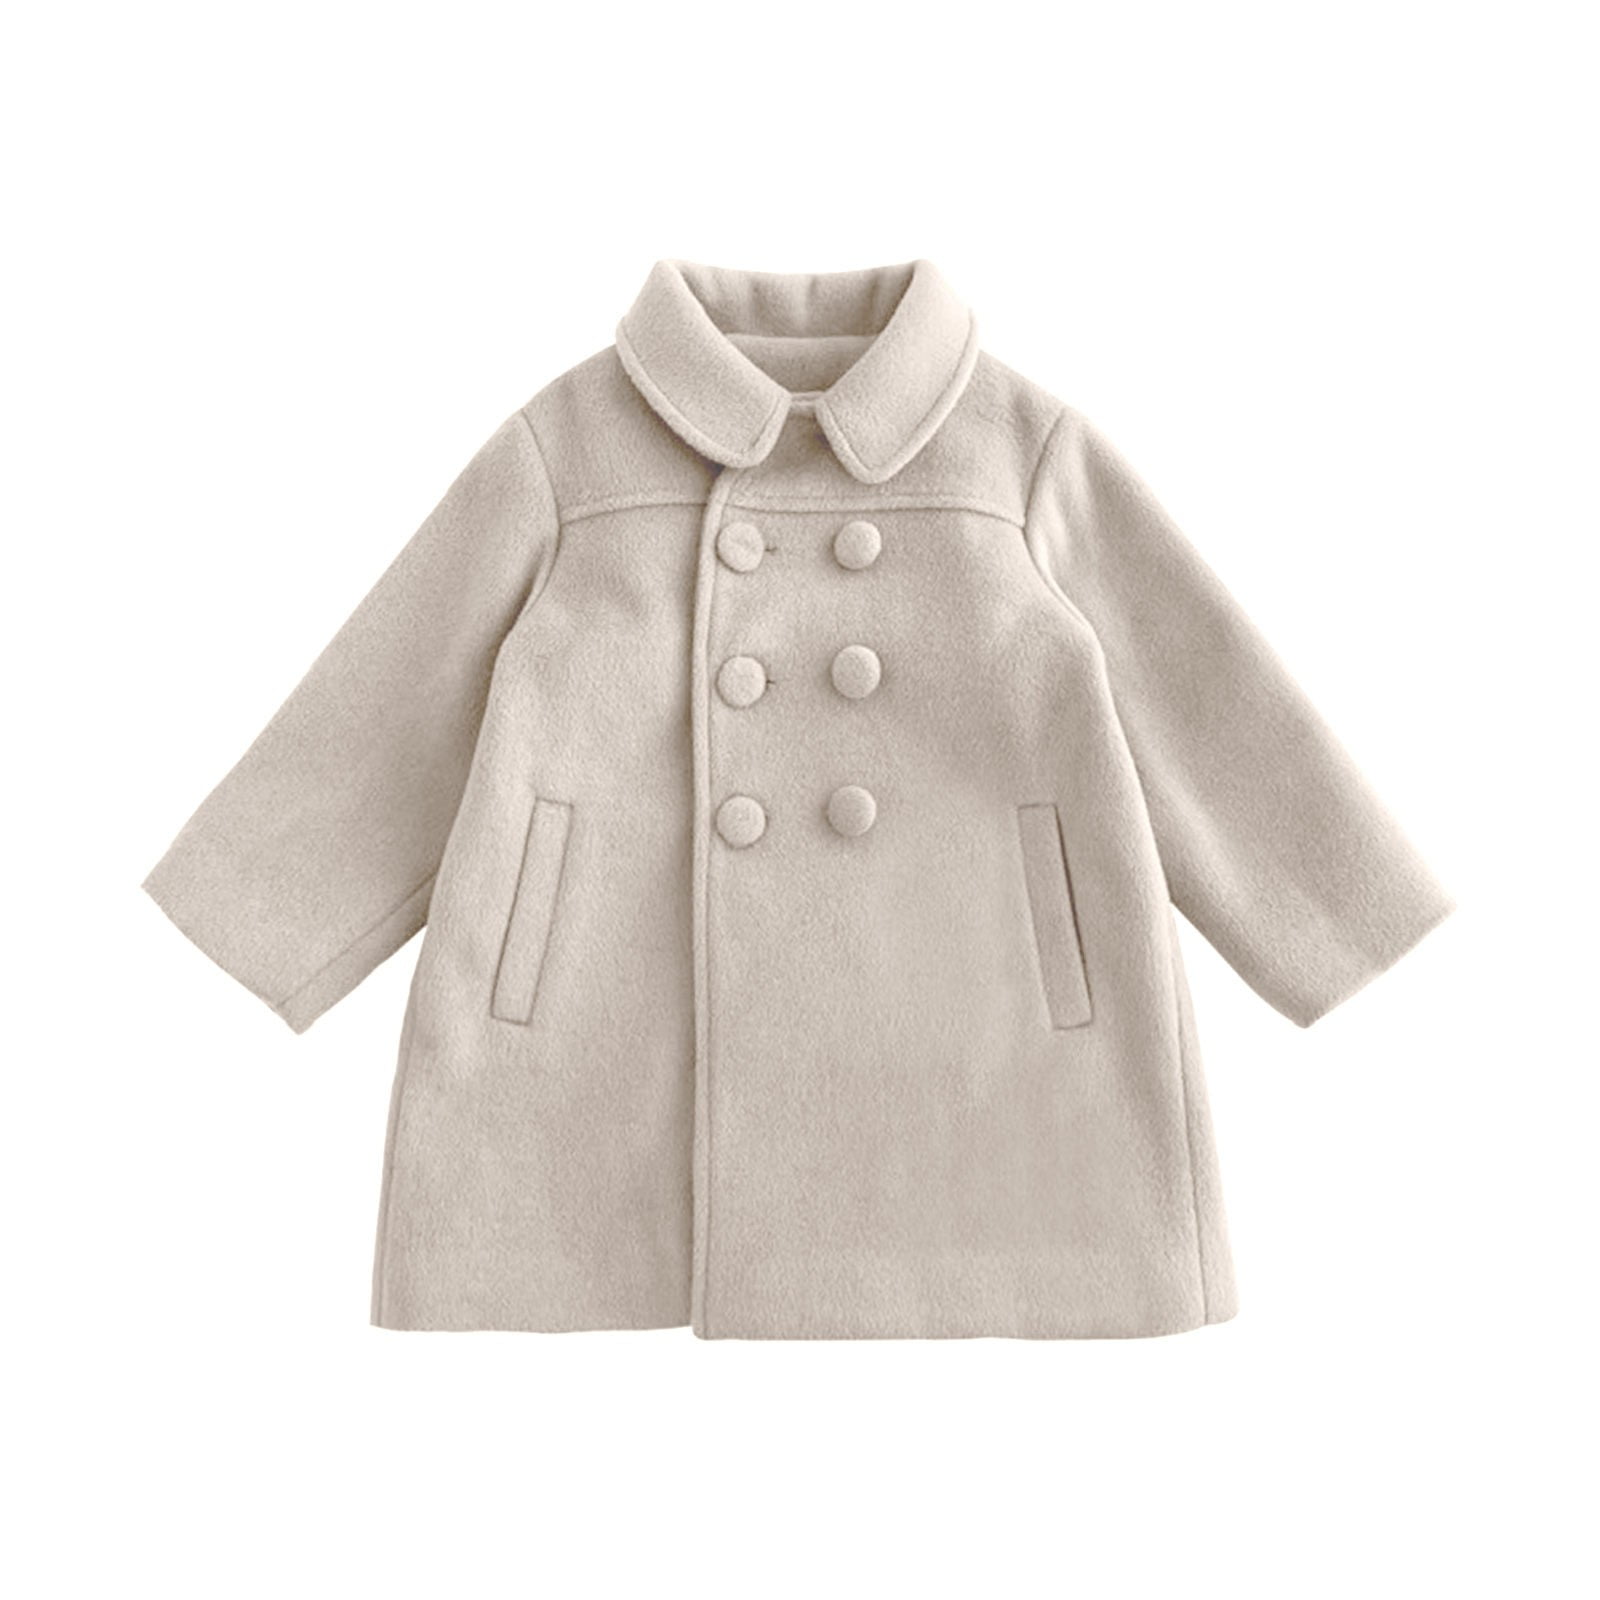 Wiueurtly Tween Winter Coats for Girls Baby Girls Dress Coat Kids ...